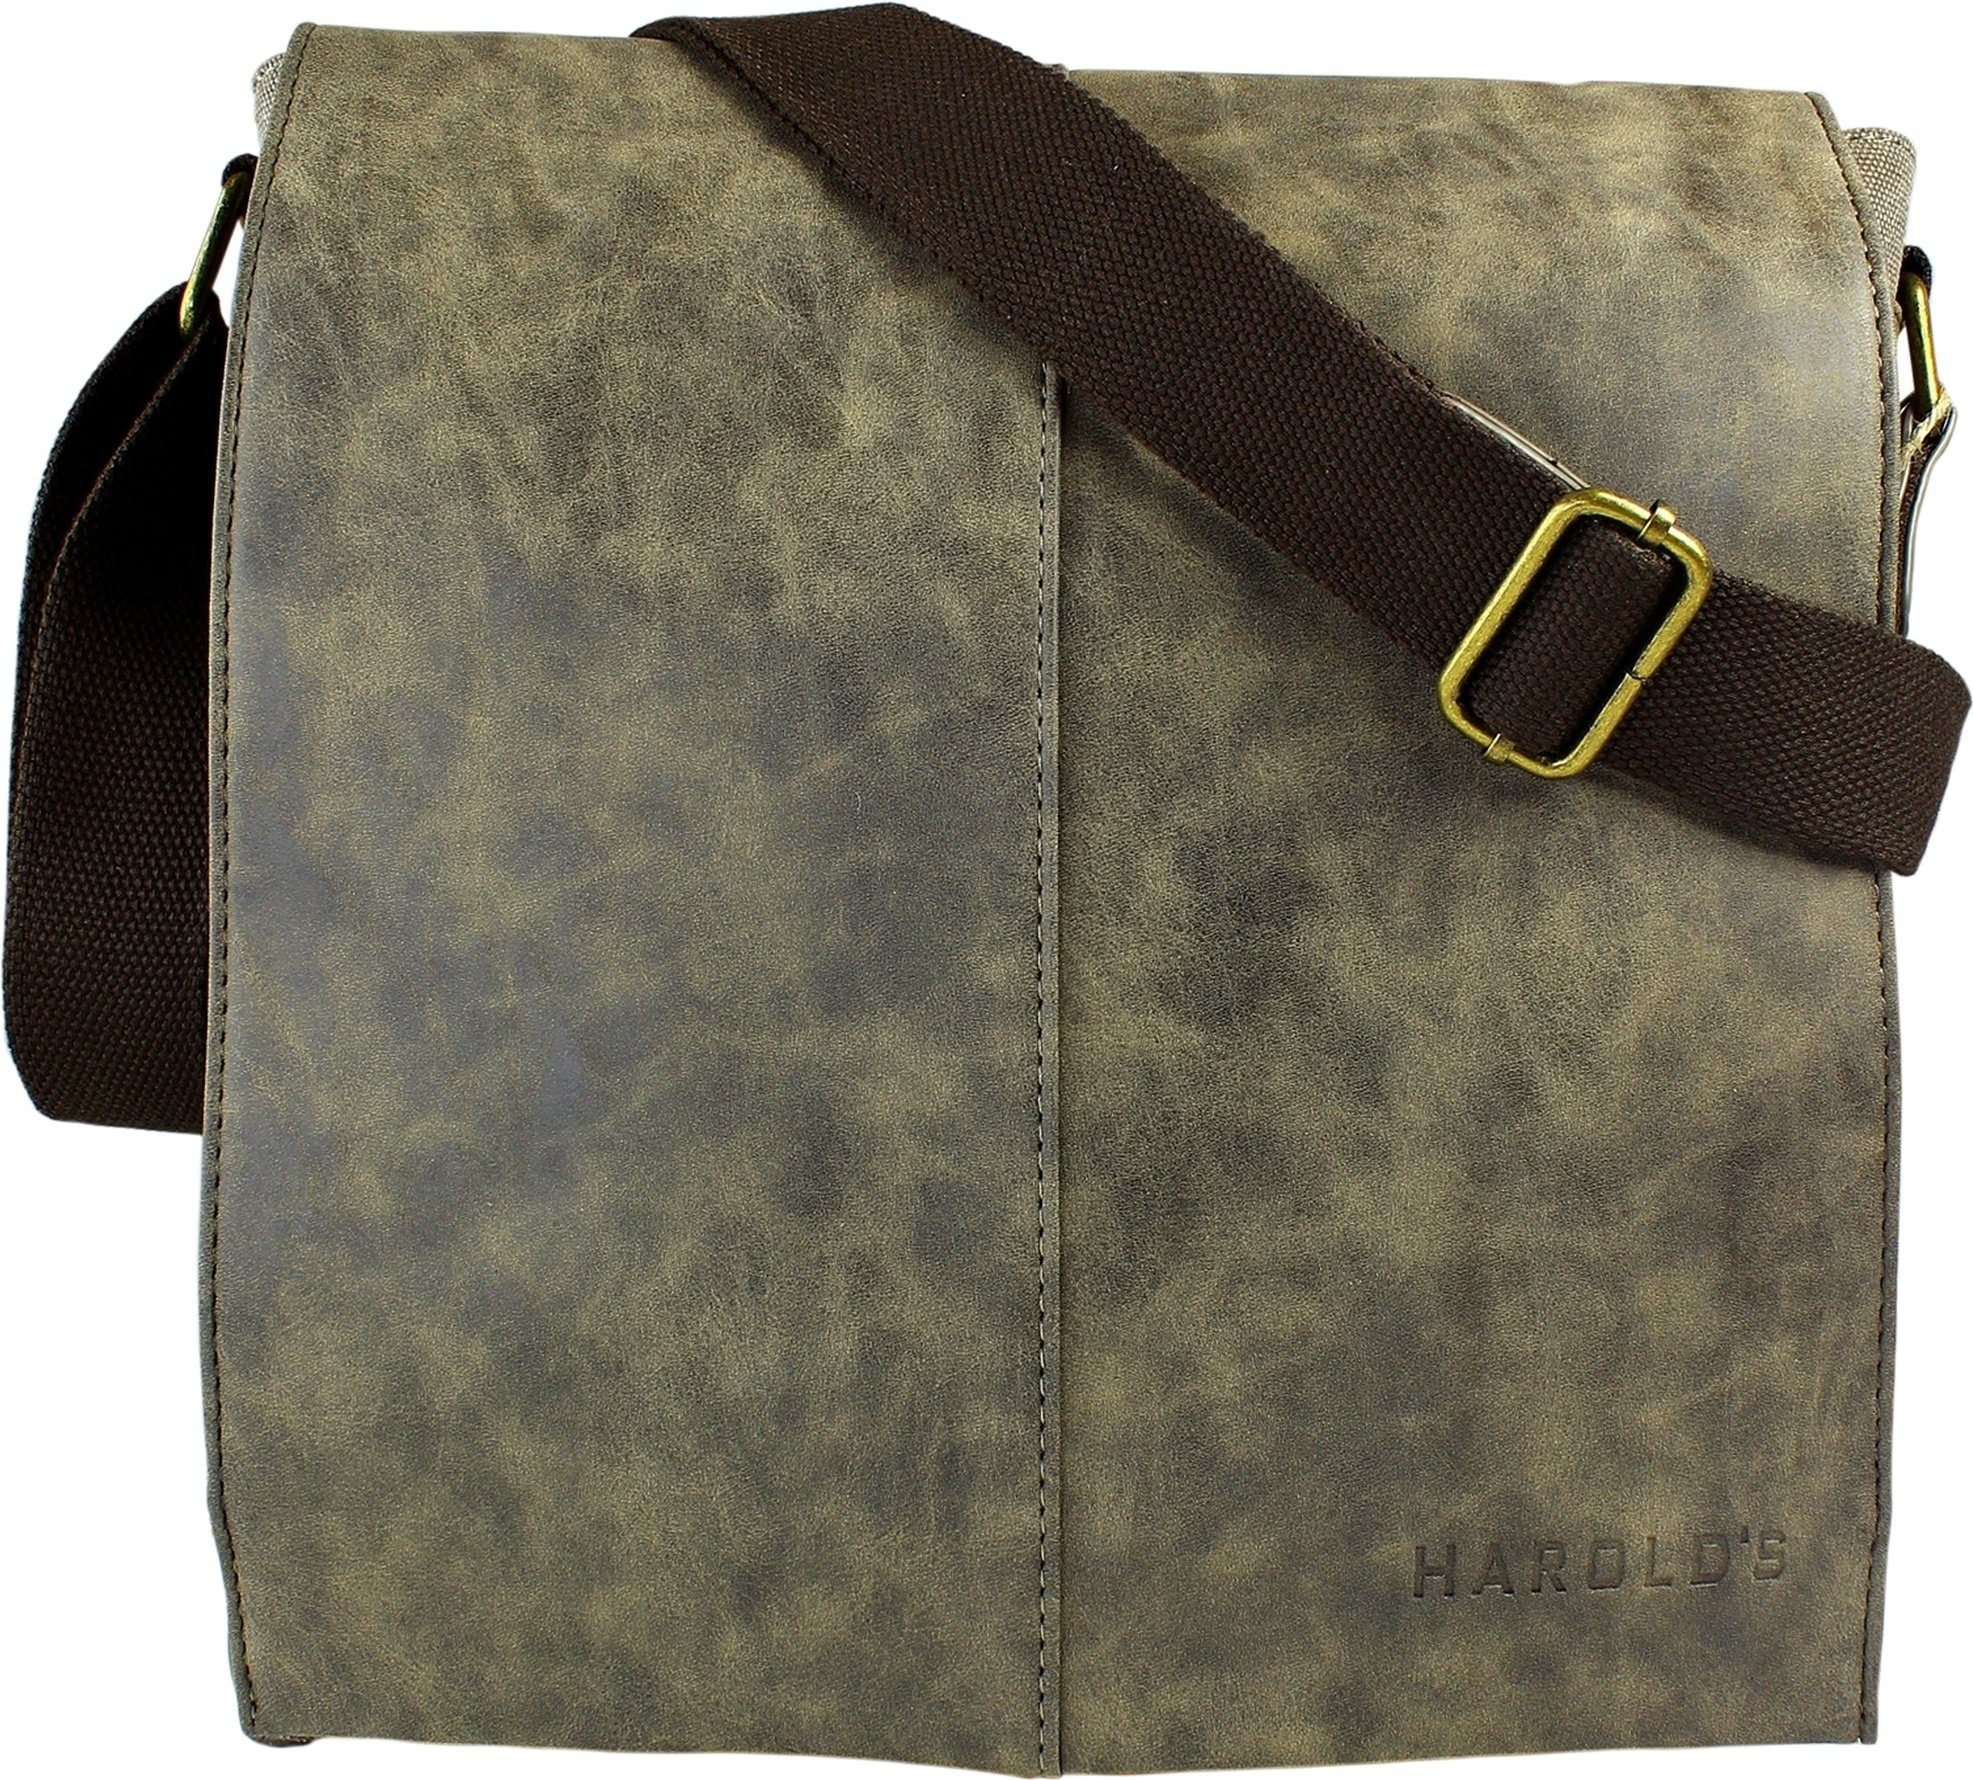 Harold's Schultertasche Harolds Herren Messenger Bag braun, Herren, Jugend  Tasche in braun, ca. 28cm Breite